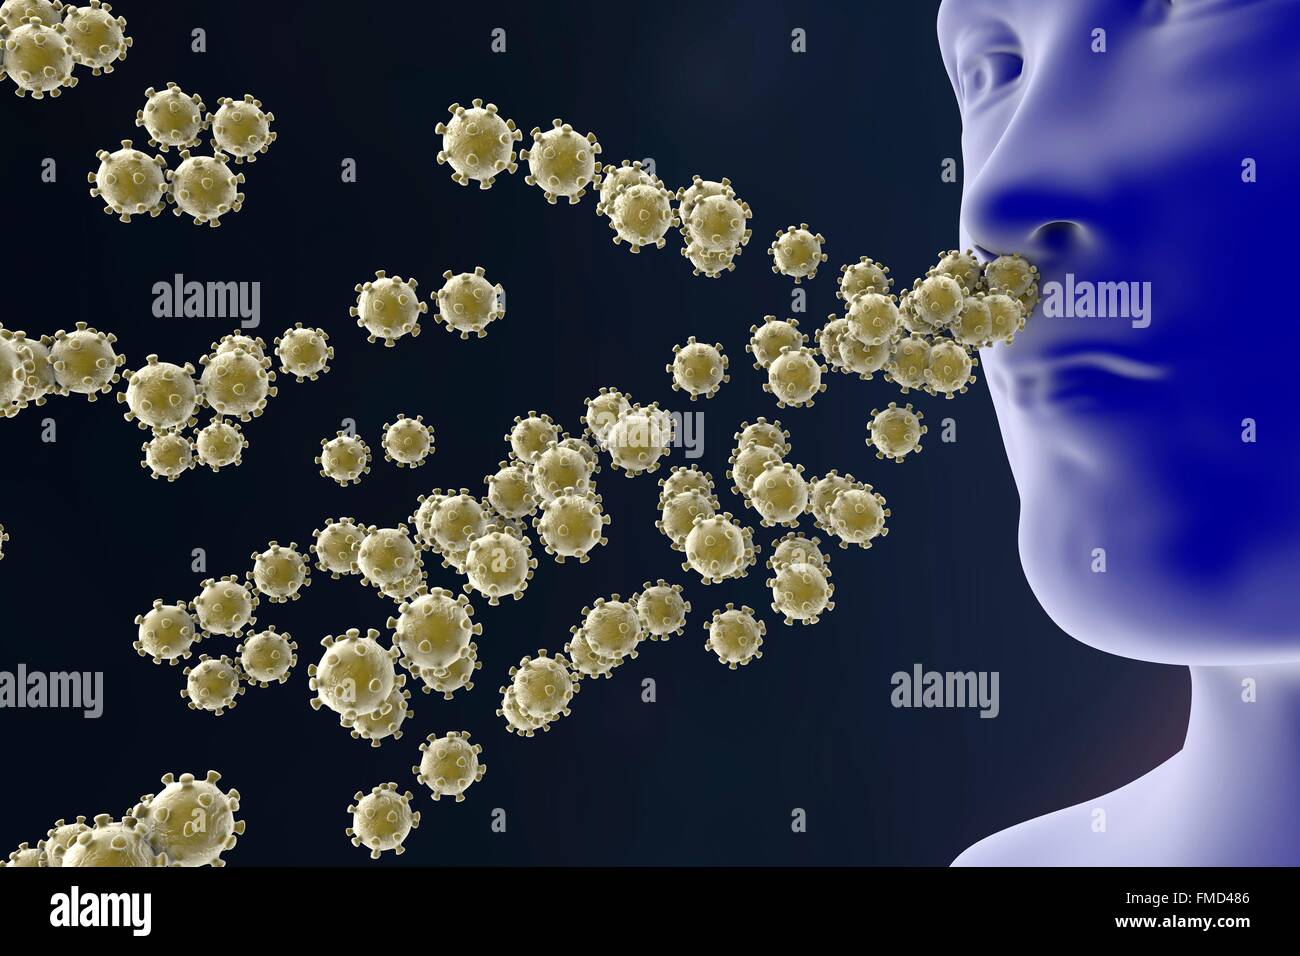 Infektion eines Menschen durch respiratorische Viren, Abbildung. Konzeptbild. Stockfoto